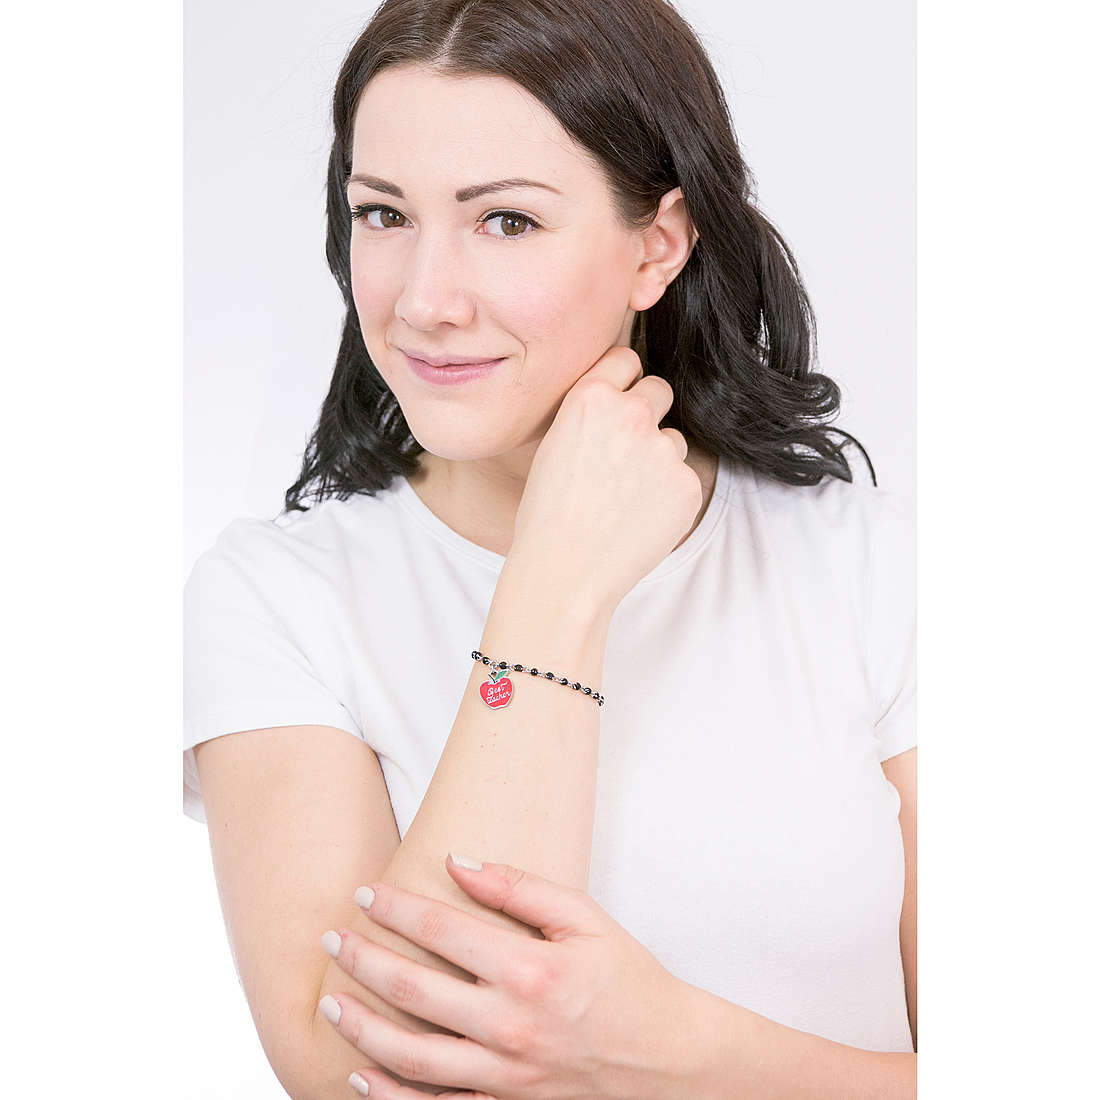 Kidult bracelets Love woman 731853 wearing